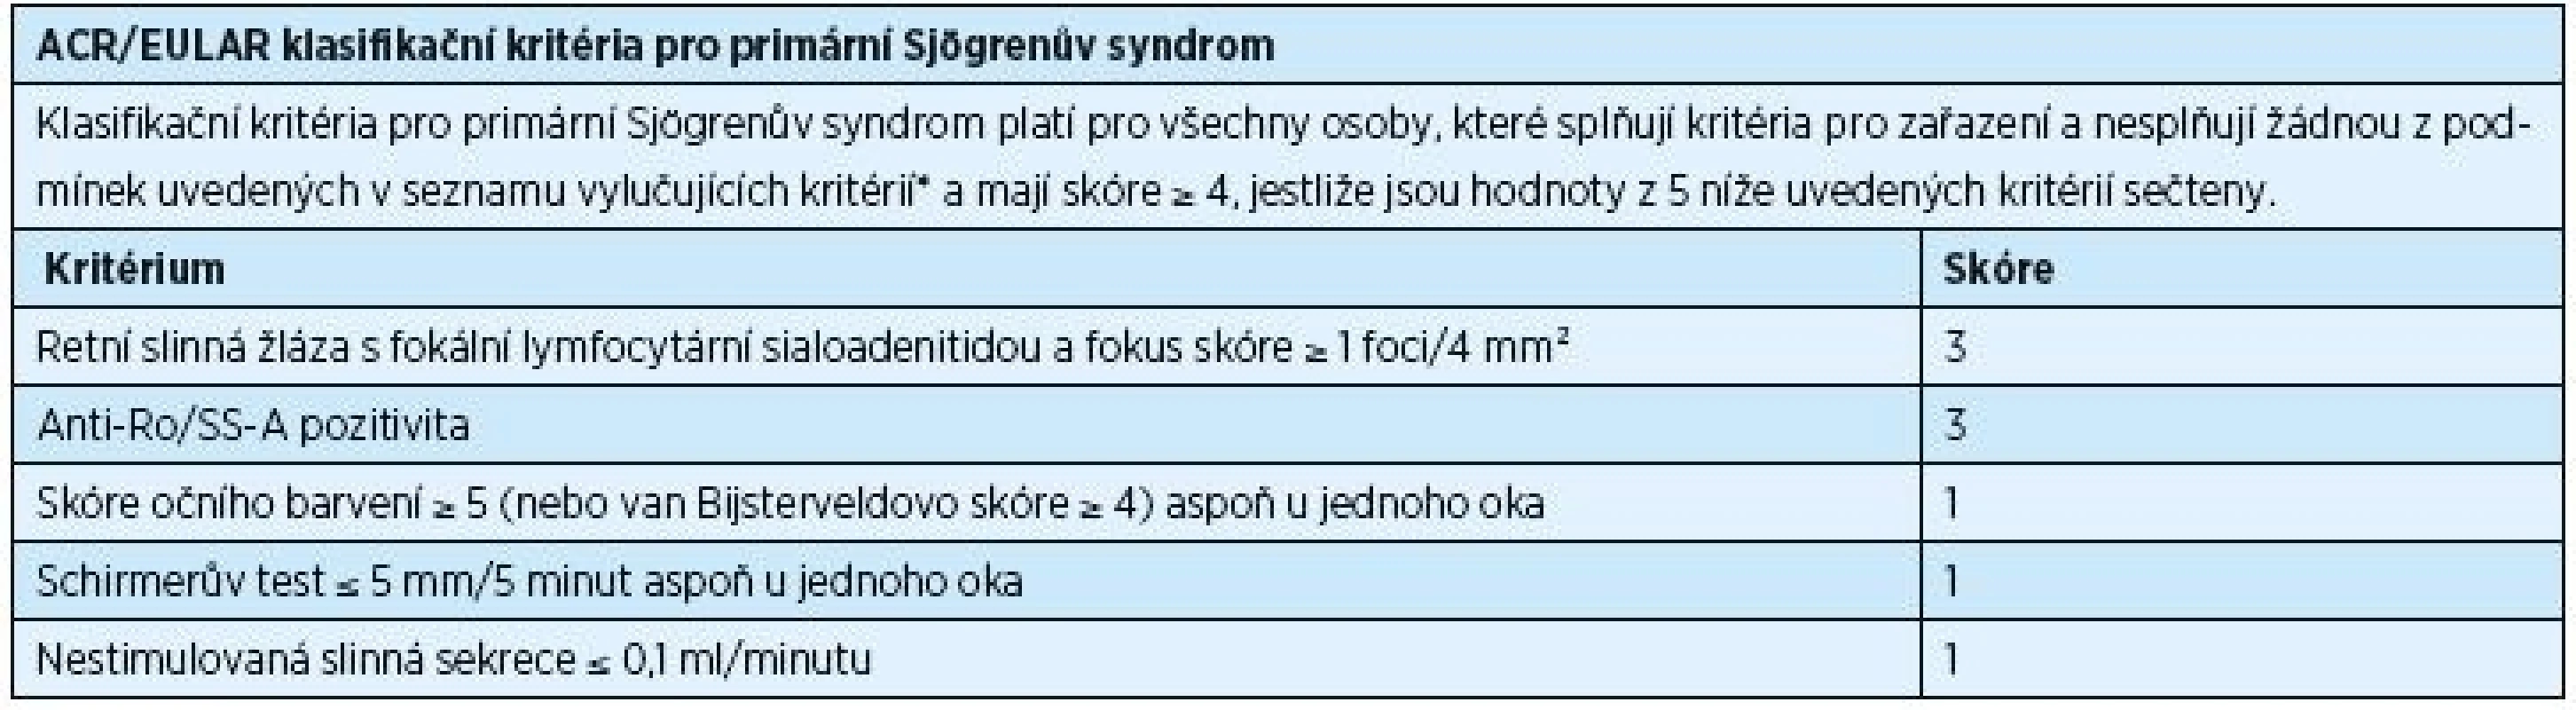 ACR/EULAR klasifikační kritéria pro primární Sjögrenův syndrom, rok 2016